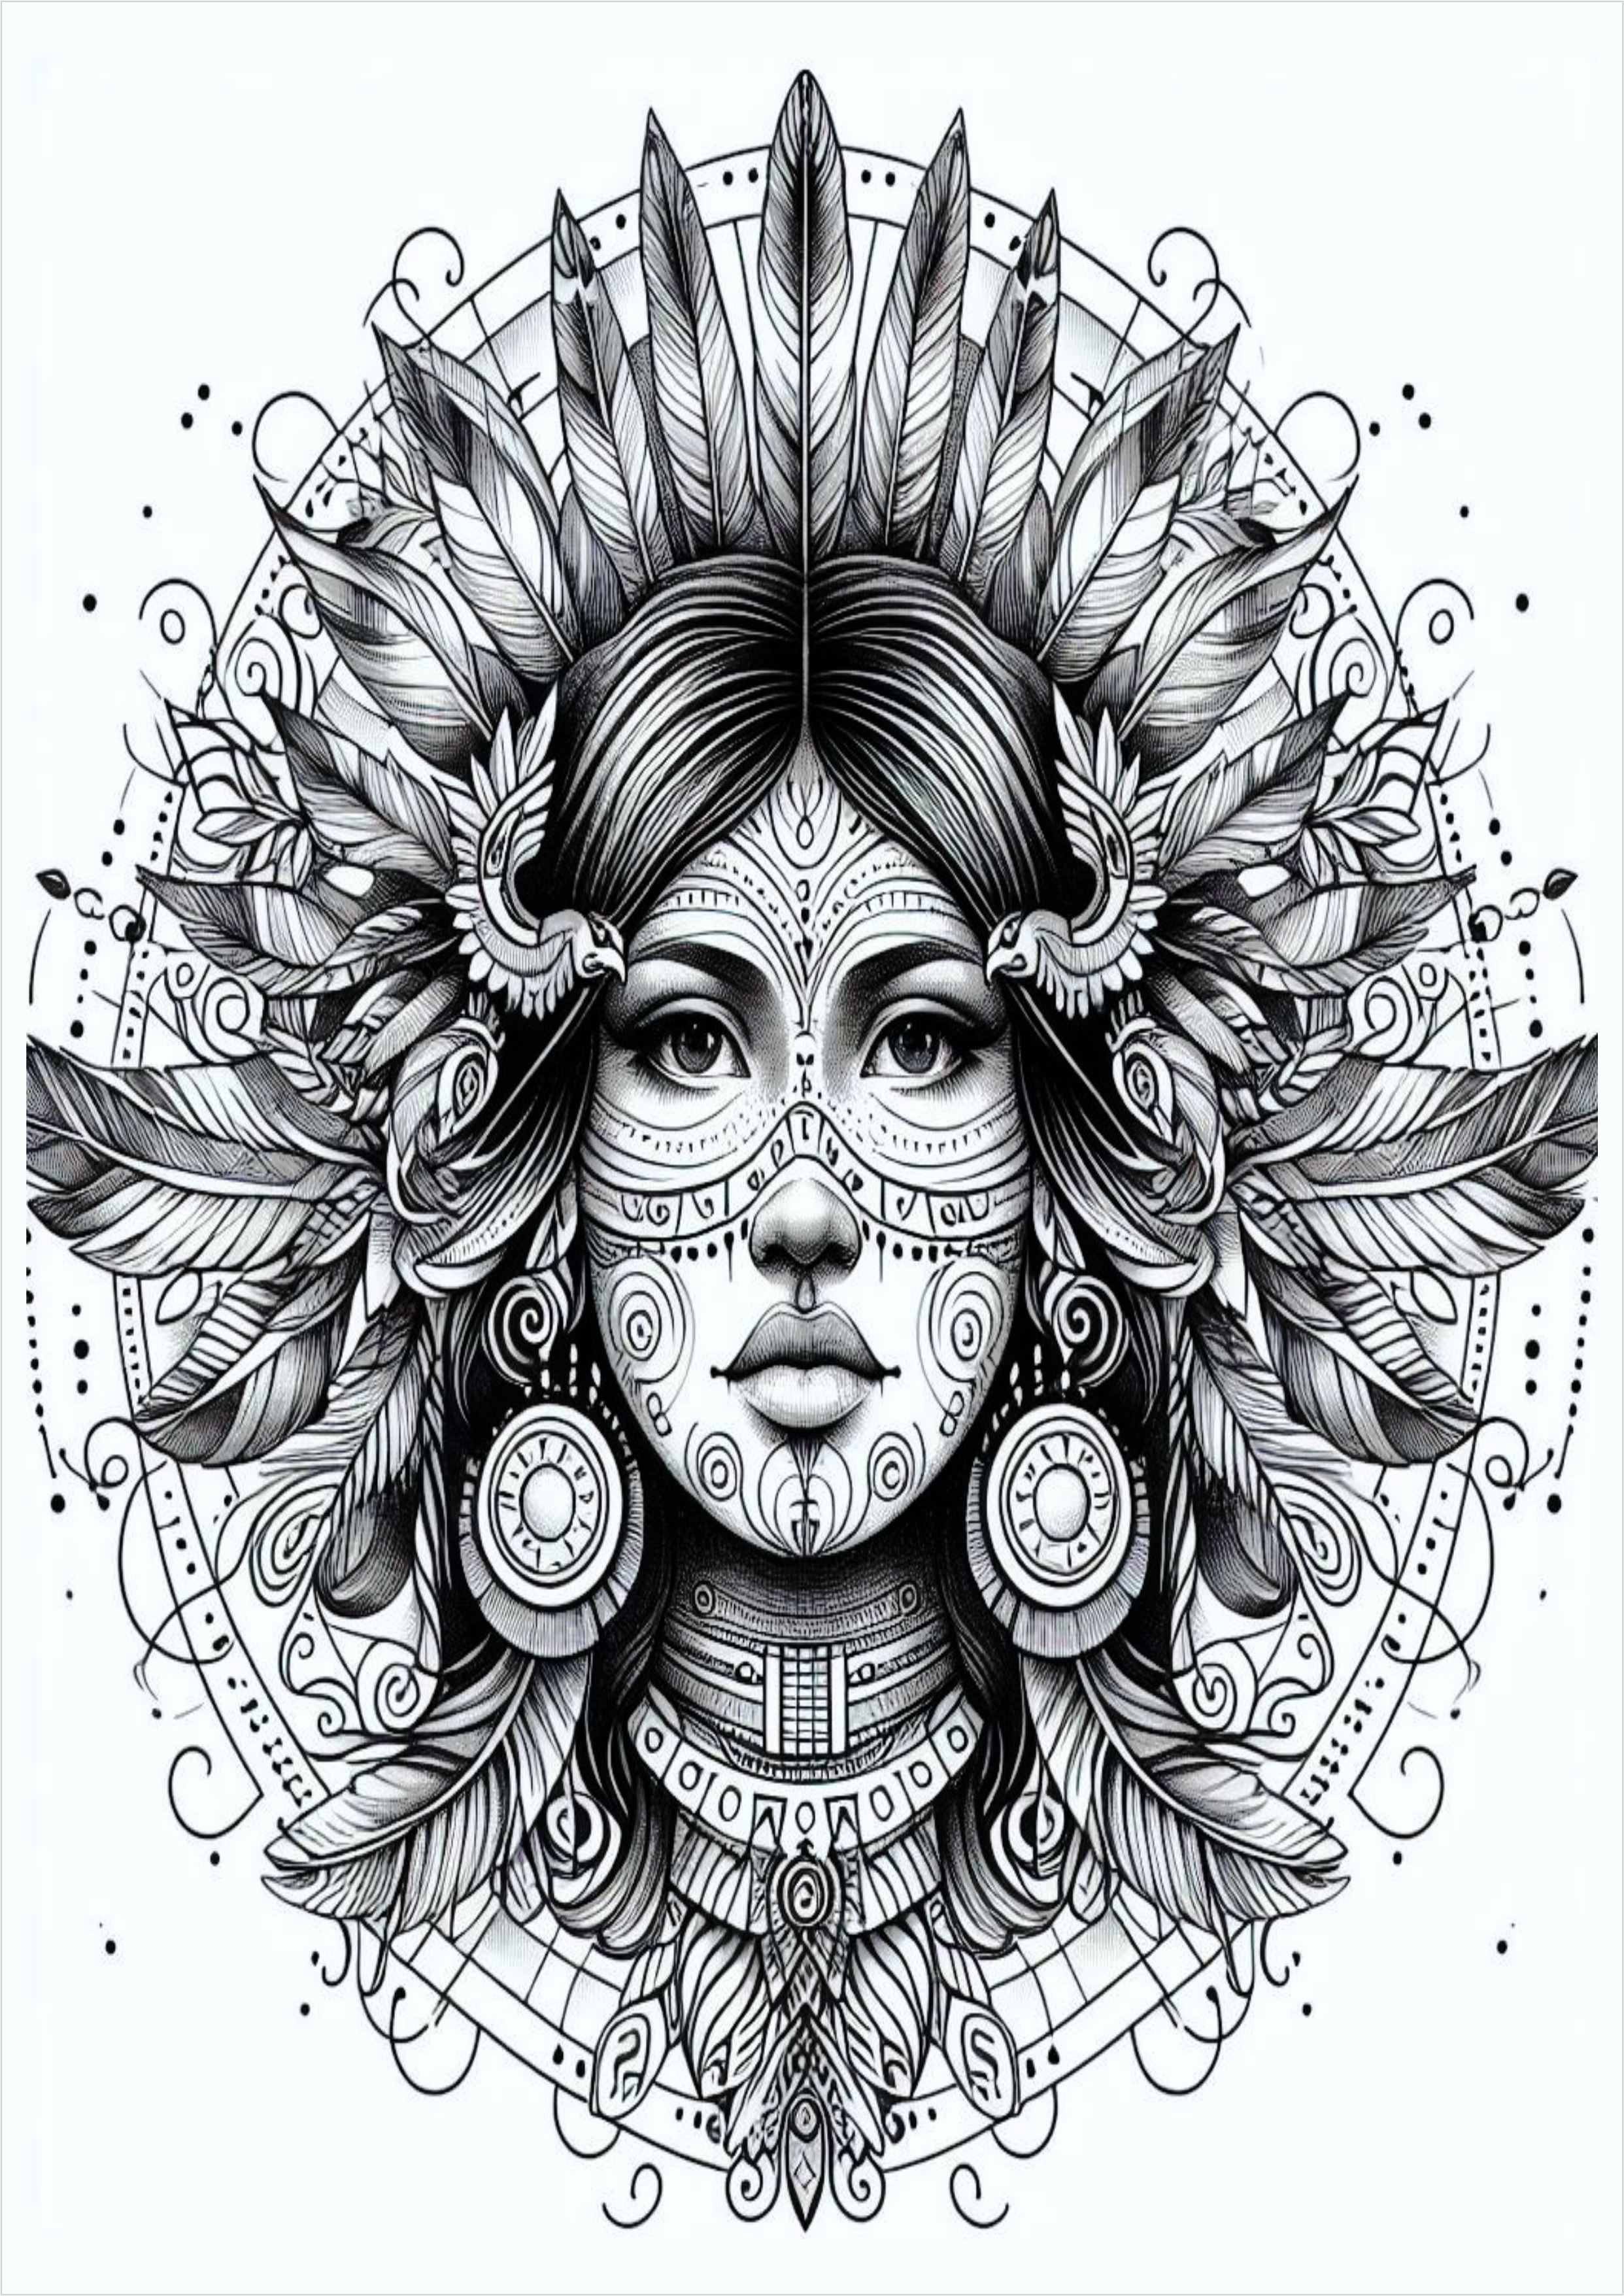 India bonita desenho para tatuagem monocromática png pack de imagens arte conceitual free download